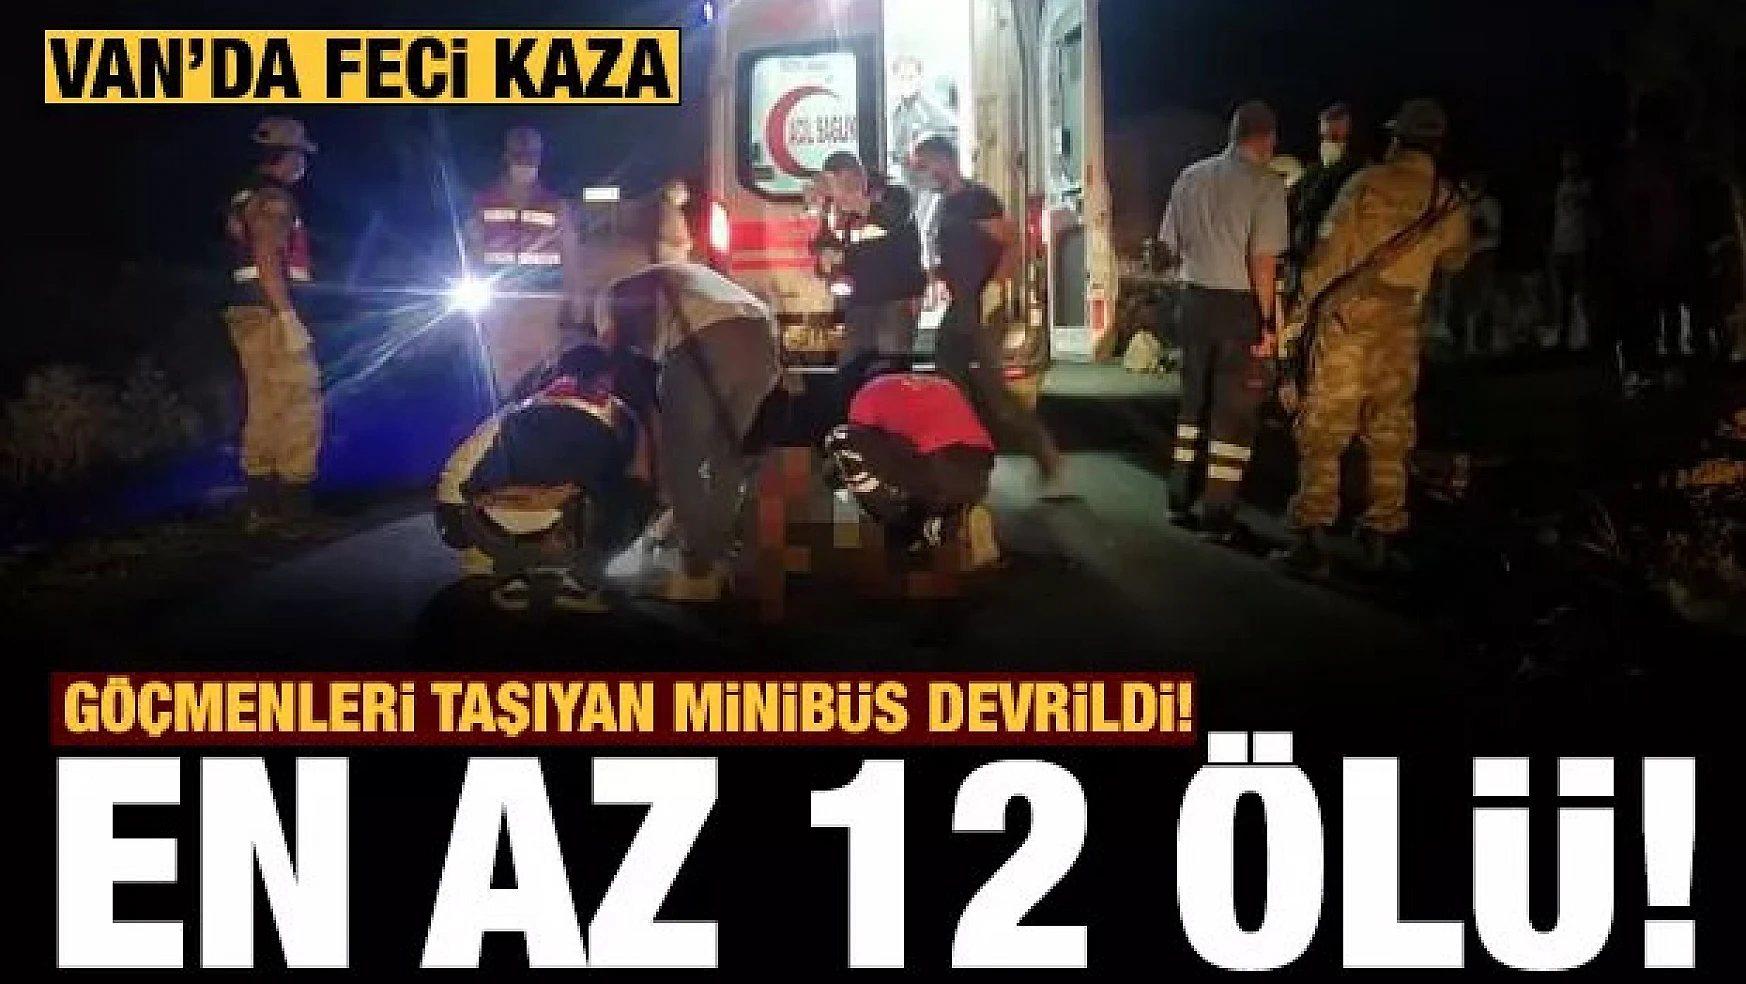  Mültecileri taşıyan minibüs kaza yaptı: 12 ölü, 20 yaralı